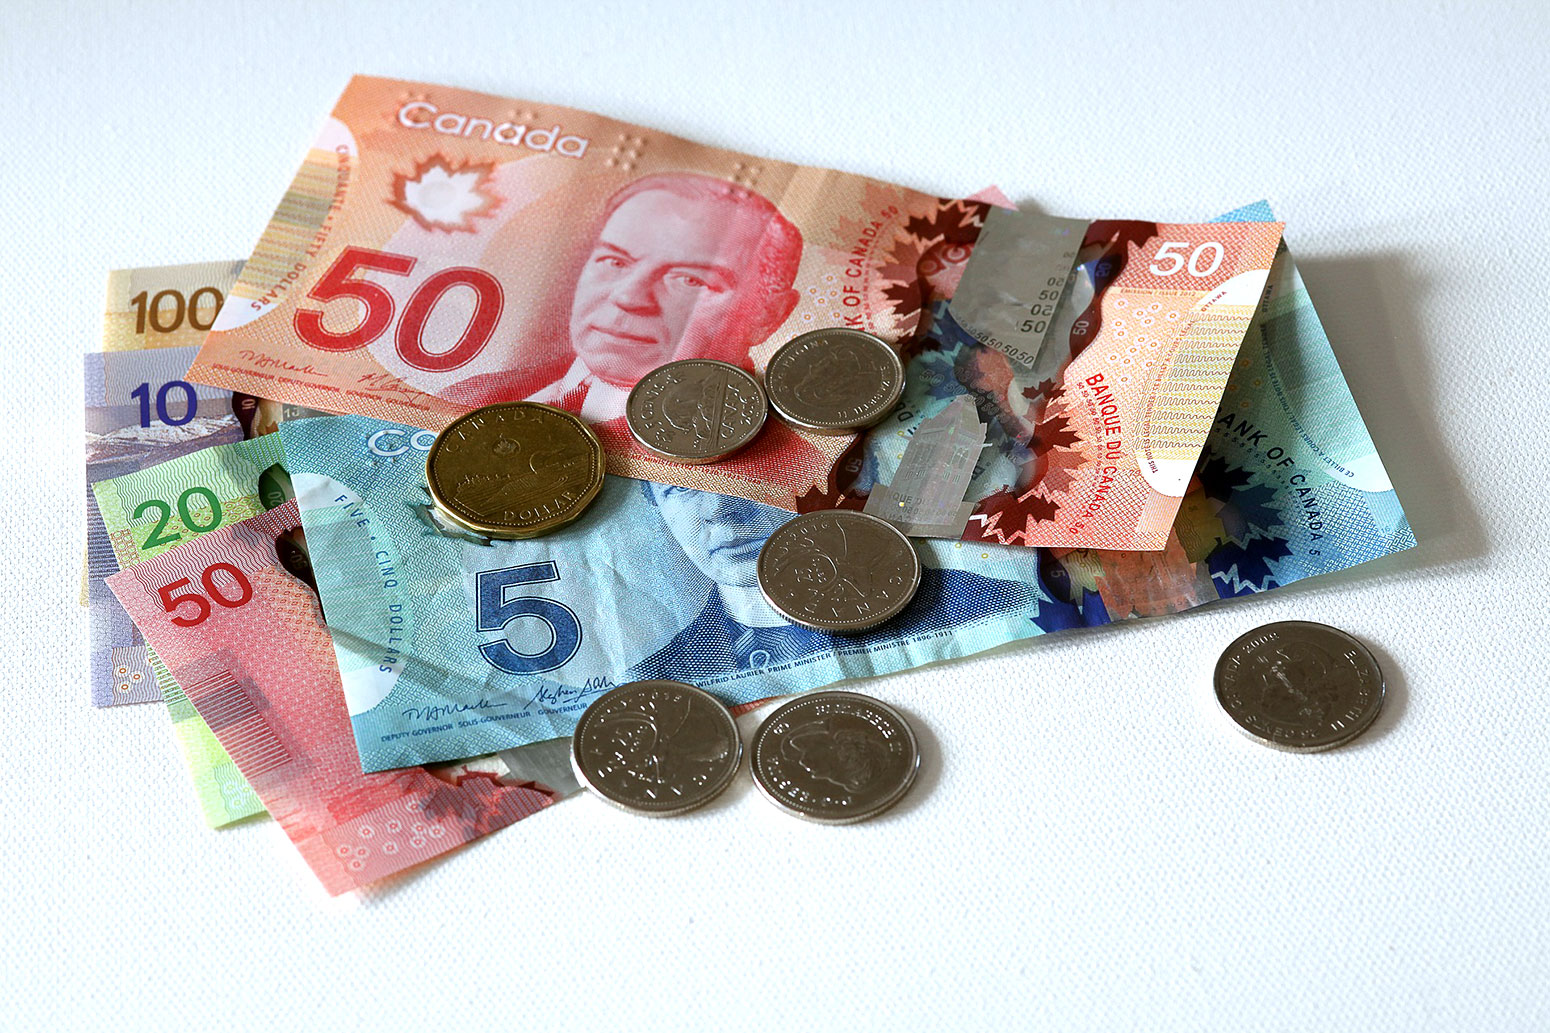 Đổi tiền Cad trước khi đi du lịch bụi Canada